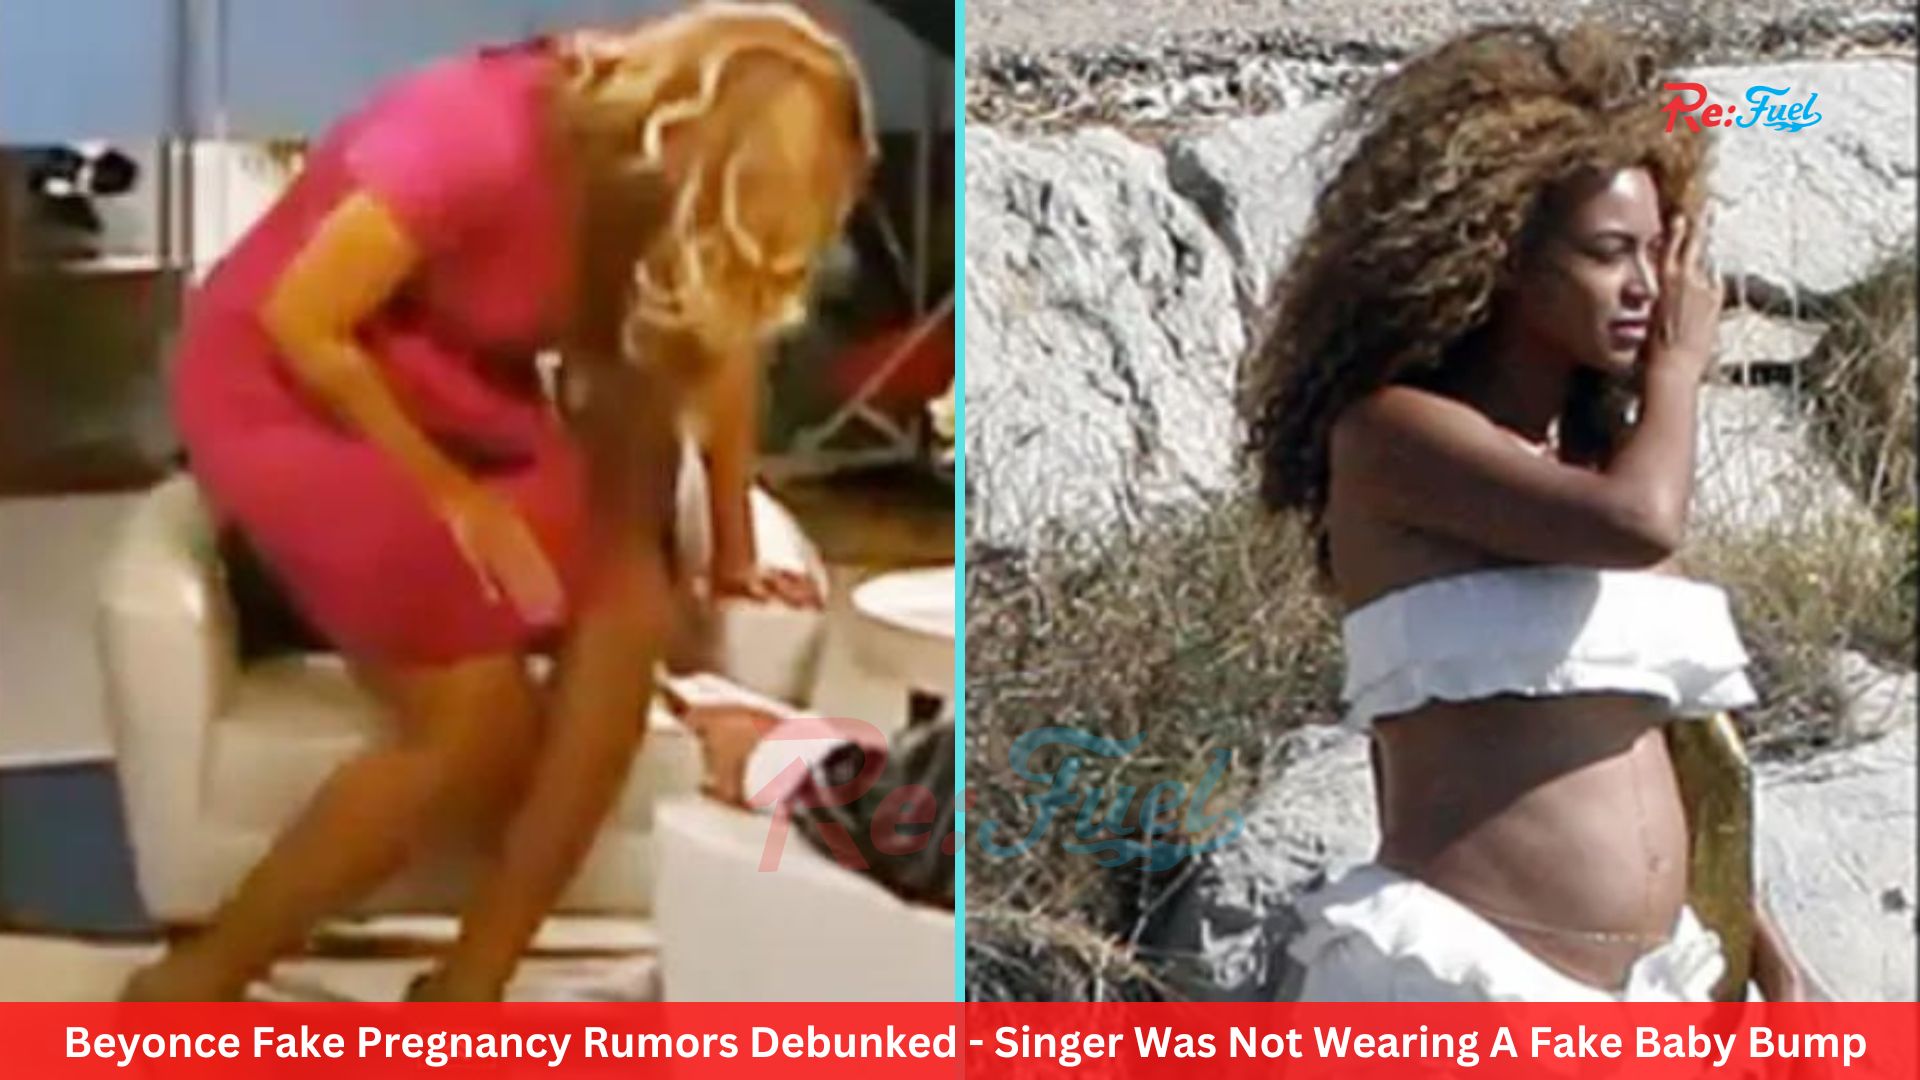 Beyonce Fake Pregnancy Rumors Debunked - Singer Was Not Wearing A Fake Baby Bump